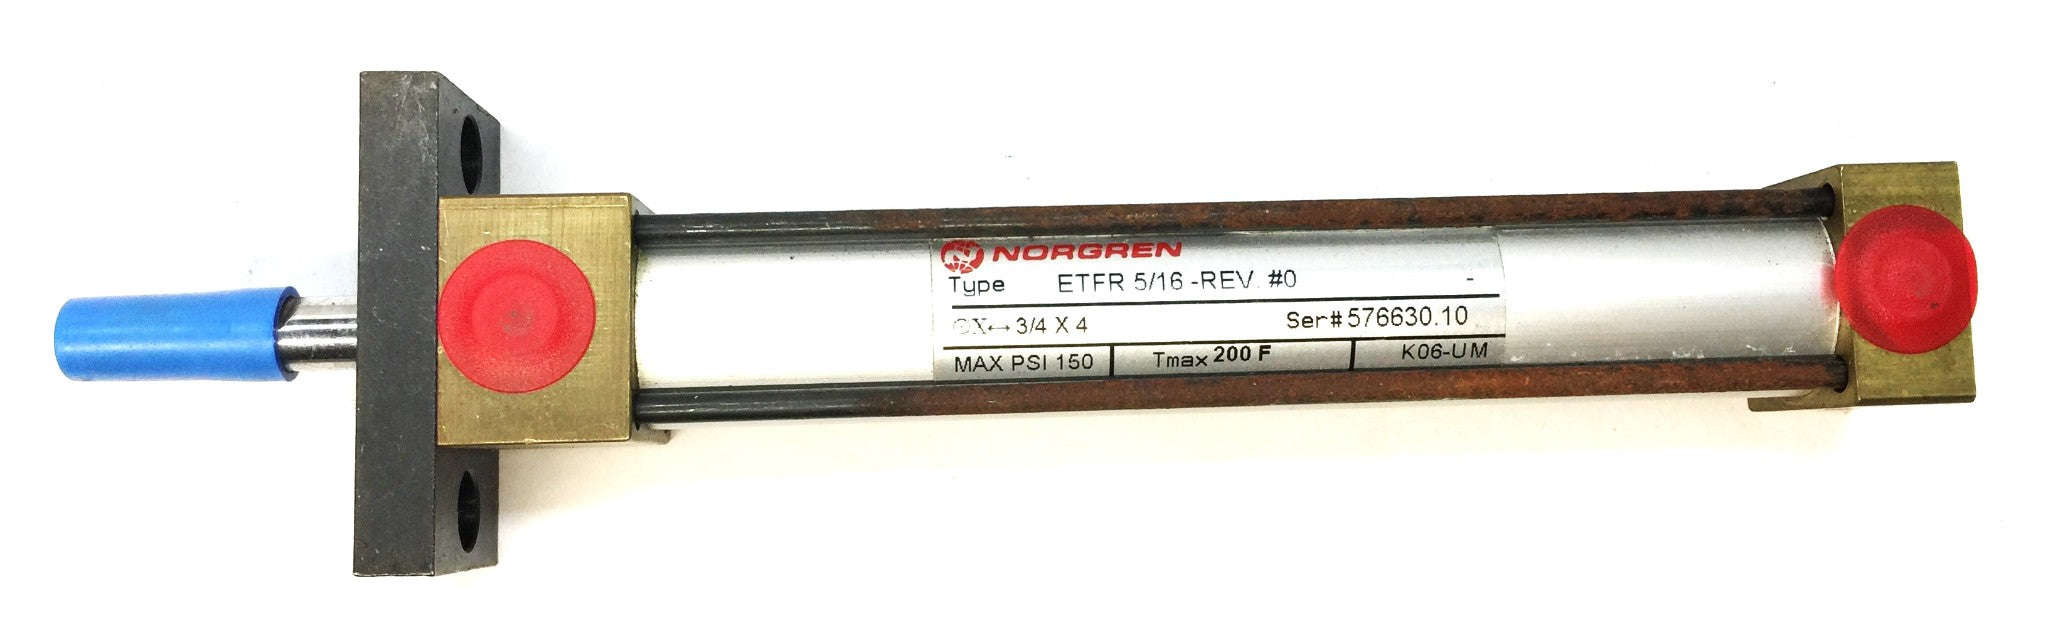 Norgren Pneumatic Air Cylinder ETFR 5/16-REV.#0 NOS